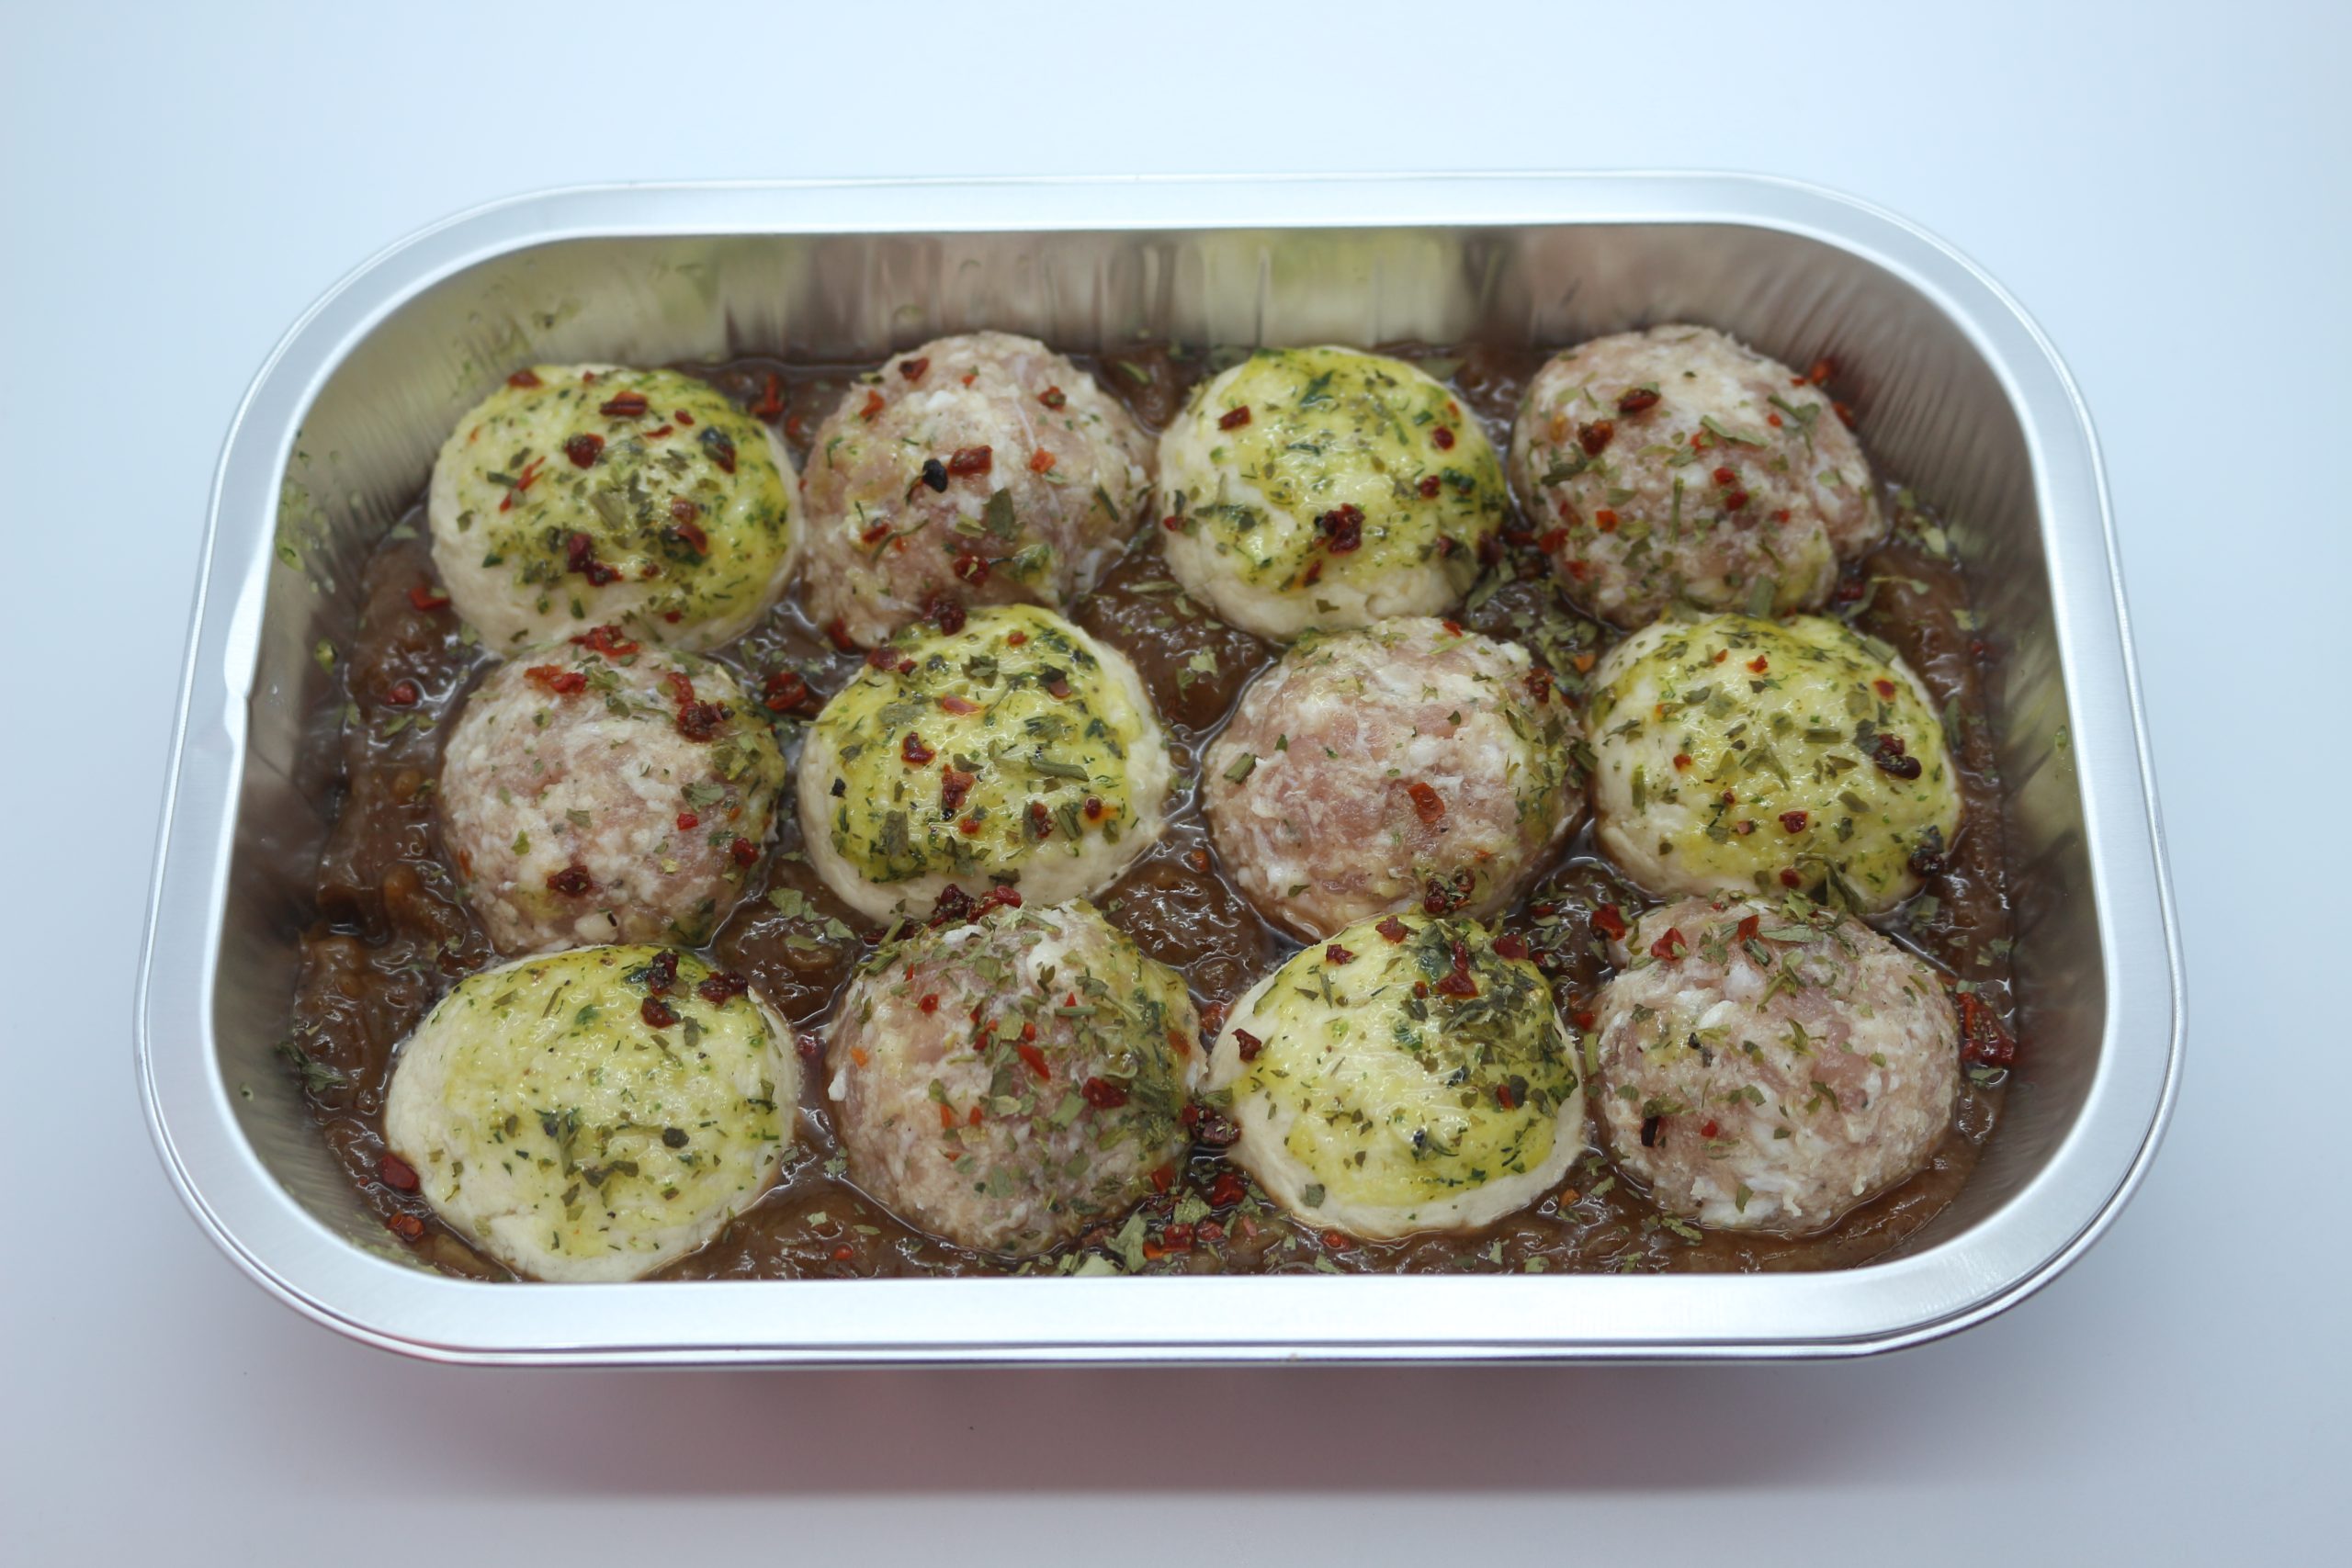 Sausage meatball & suet dumpling hachee casserole (2)